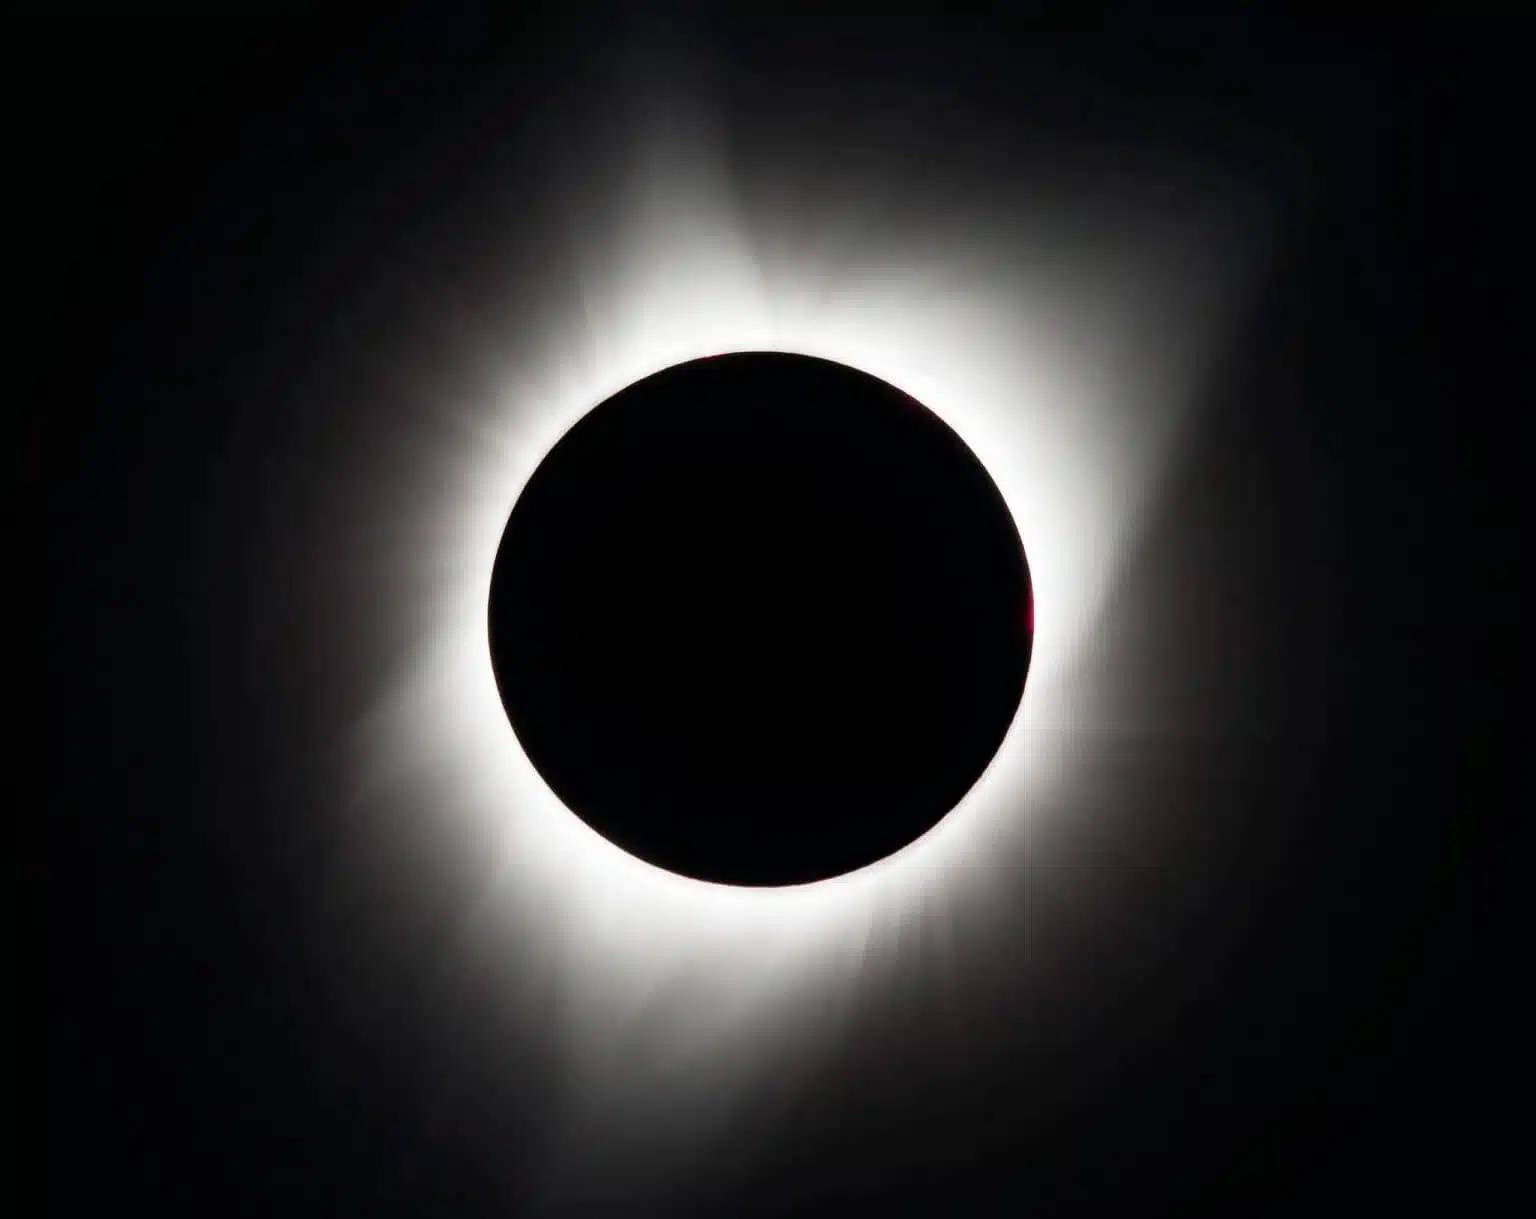 ליקוי החמה המלא ב-21 באוגוסט 2017 צולם ממדראס, אורגון. העיגול השחור באמצע הוא הירח. סביבו זרמי אור לבנים השייכים לאטמוספירה החיצונית של השמש, הנקראת עטרה. קרדיט: נאס"א/אוברי גמניאני